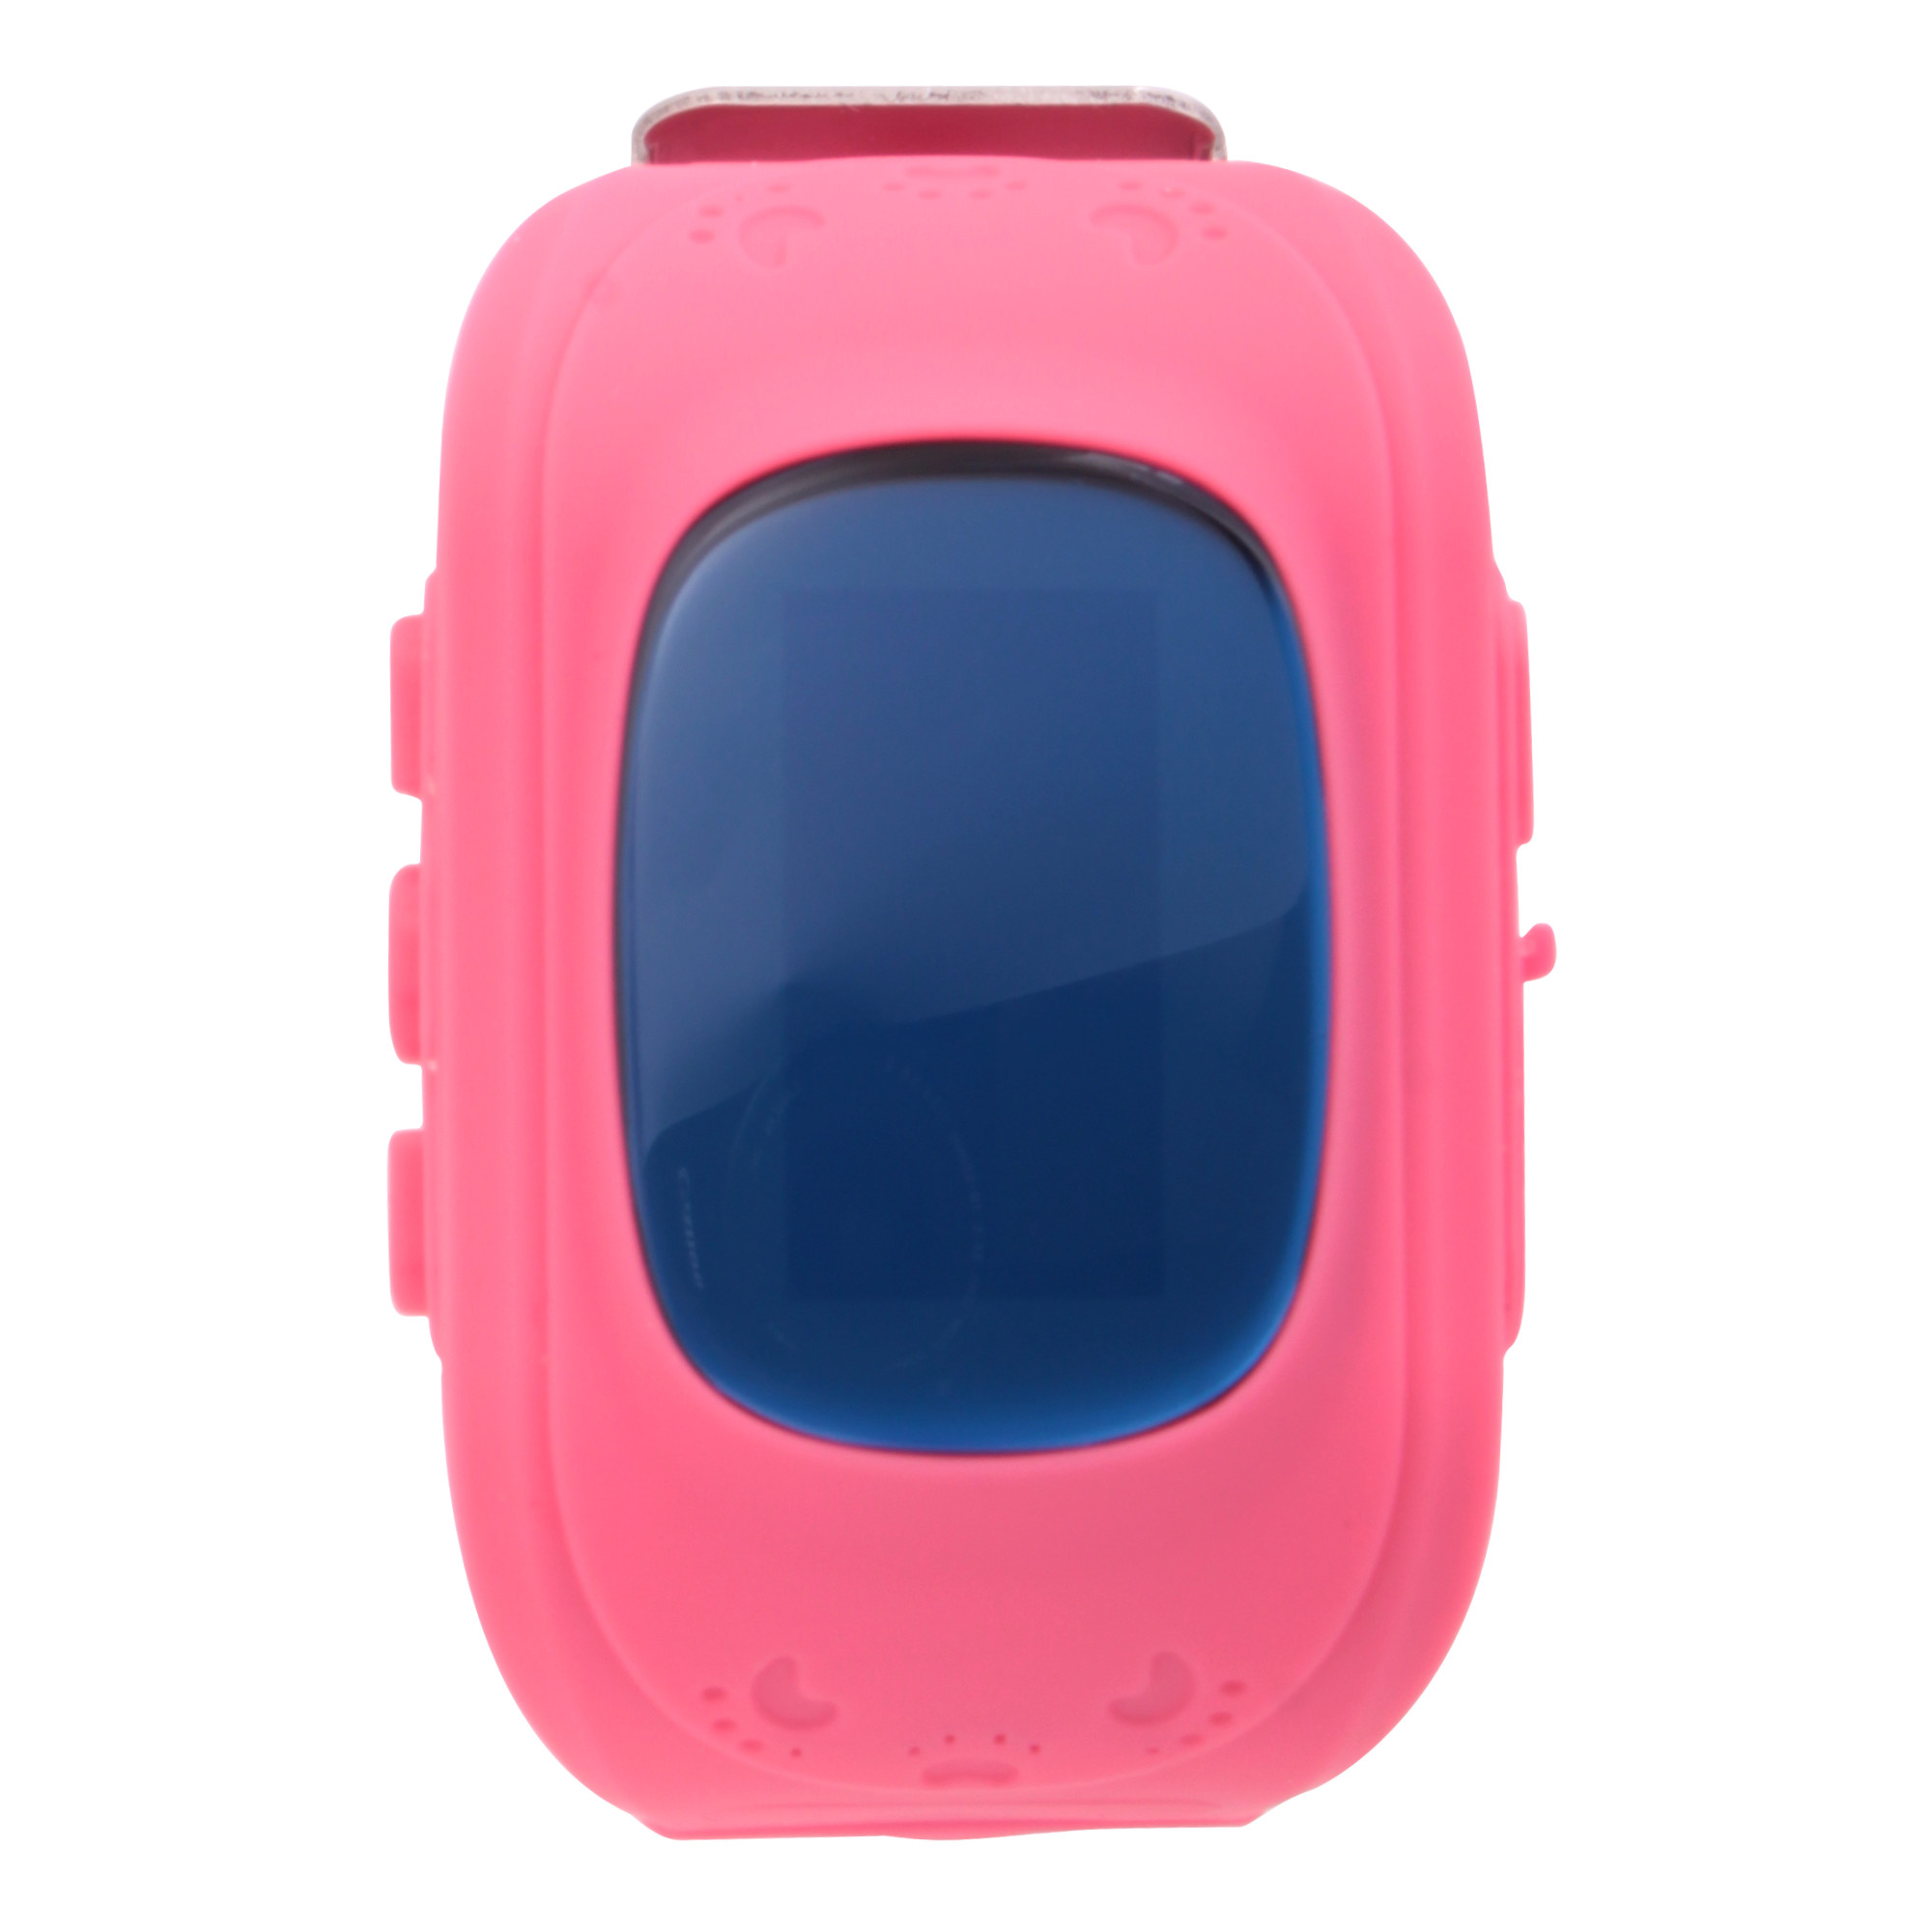 Часы-GPS Smart Watch Q50 резиновые с полным экраном розовые